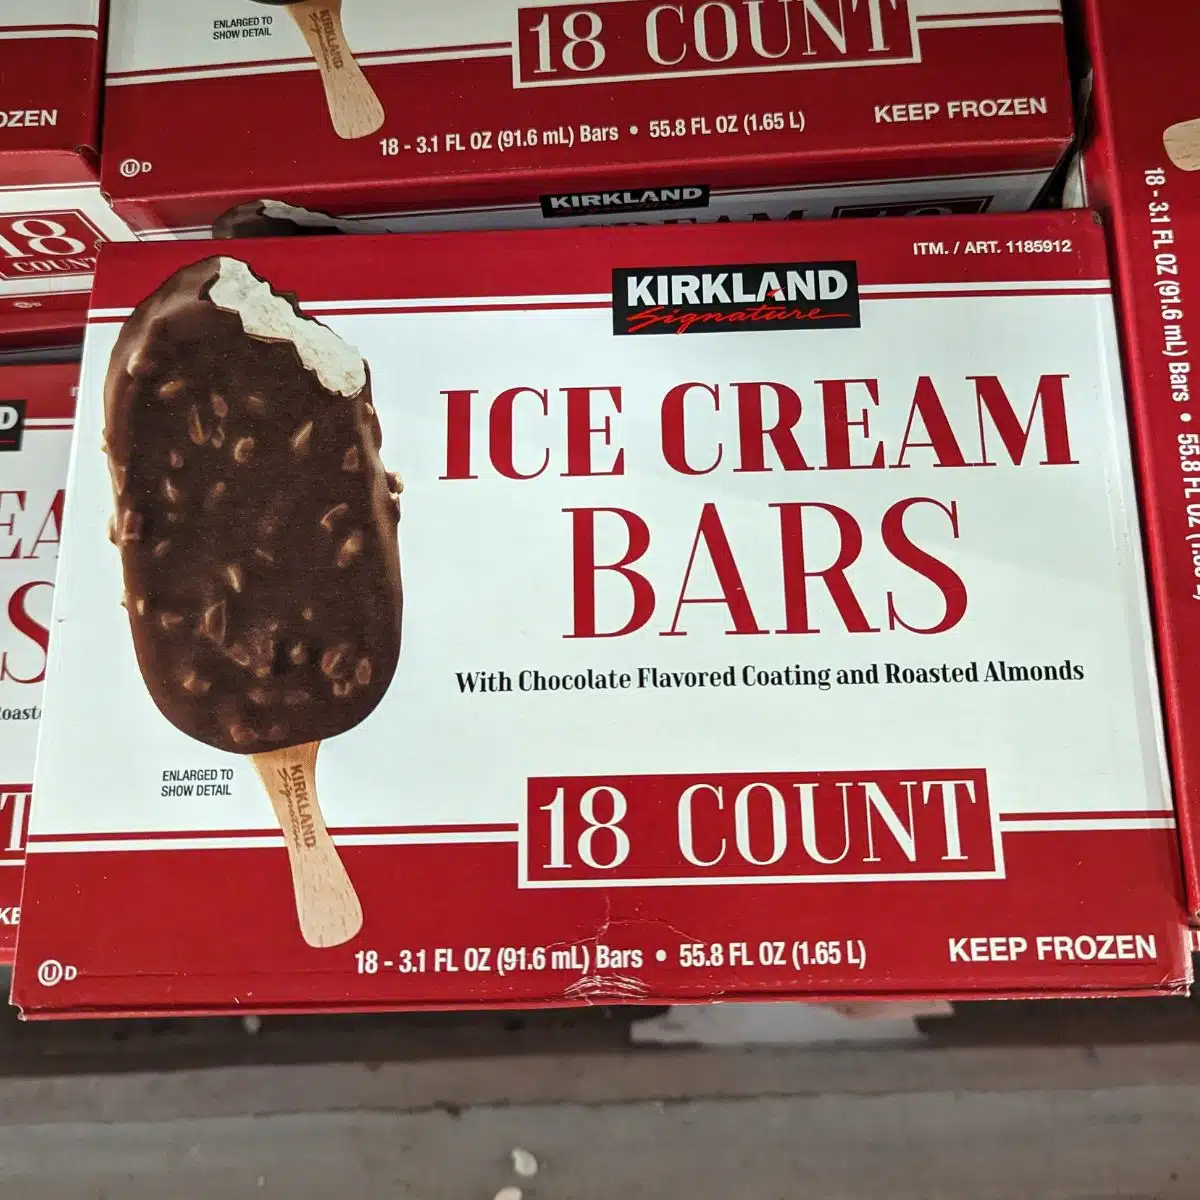 Costco's Ice Cream Bars. 